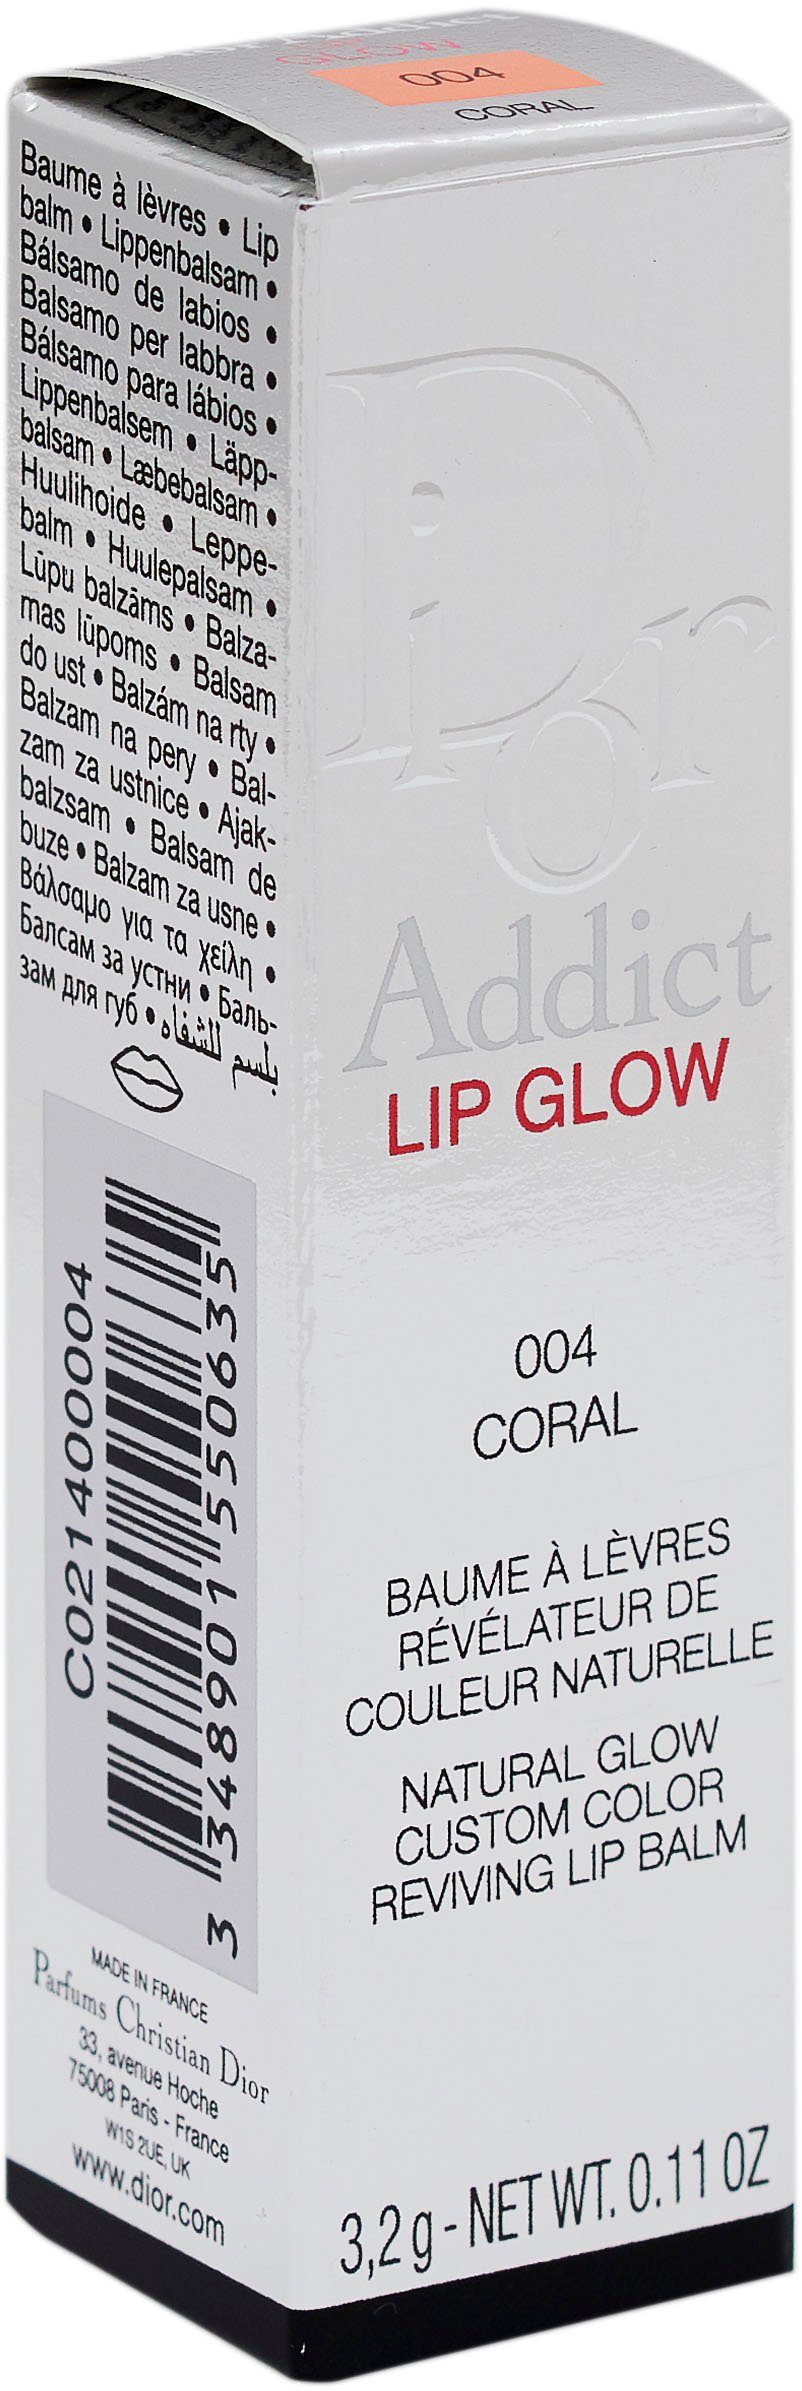 Dior Lippenbalsam Coral Addict 004 Lip Dior Glow